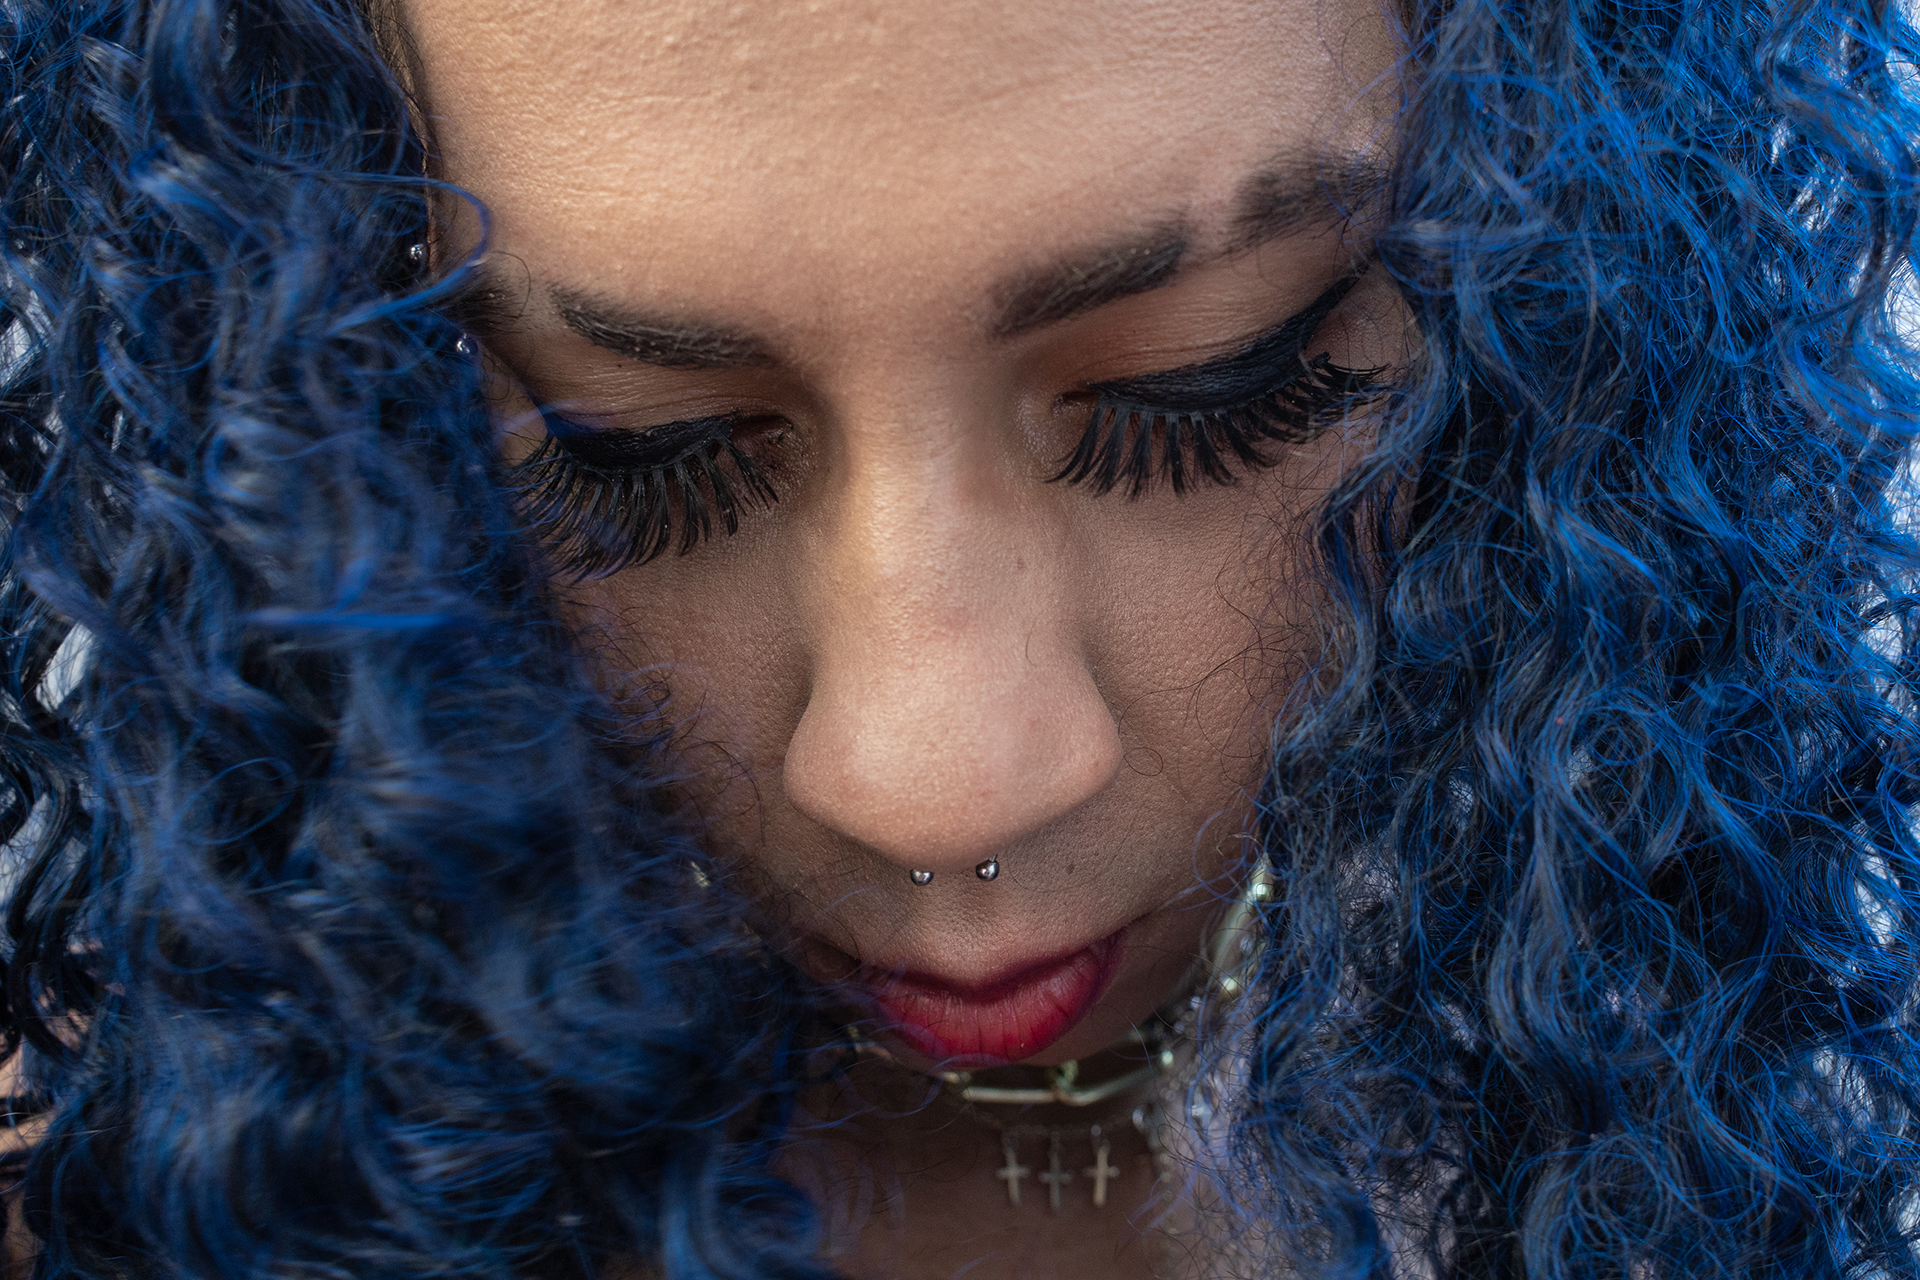 Retrato de Bárbara com cabelo azul durante evento do projeto Transgressoras em São Paulo. Bárbara costuma mudar de cabelo com frequência, do longo ao curto e com diversas colorações.